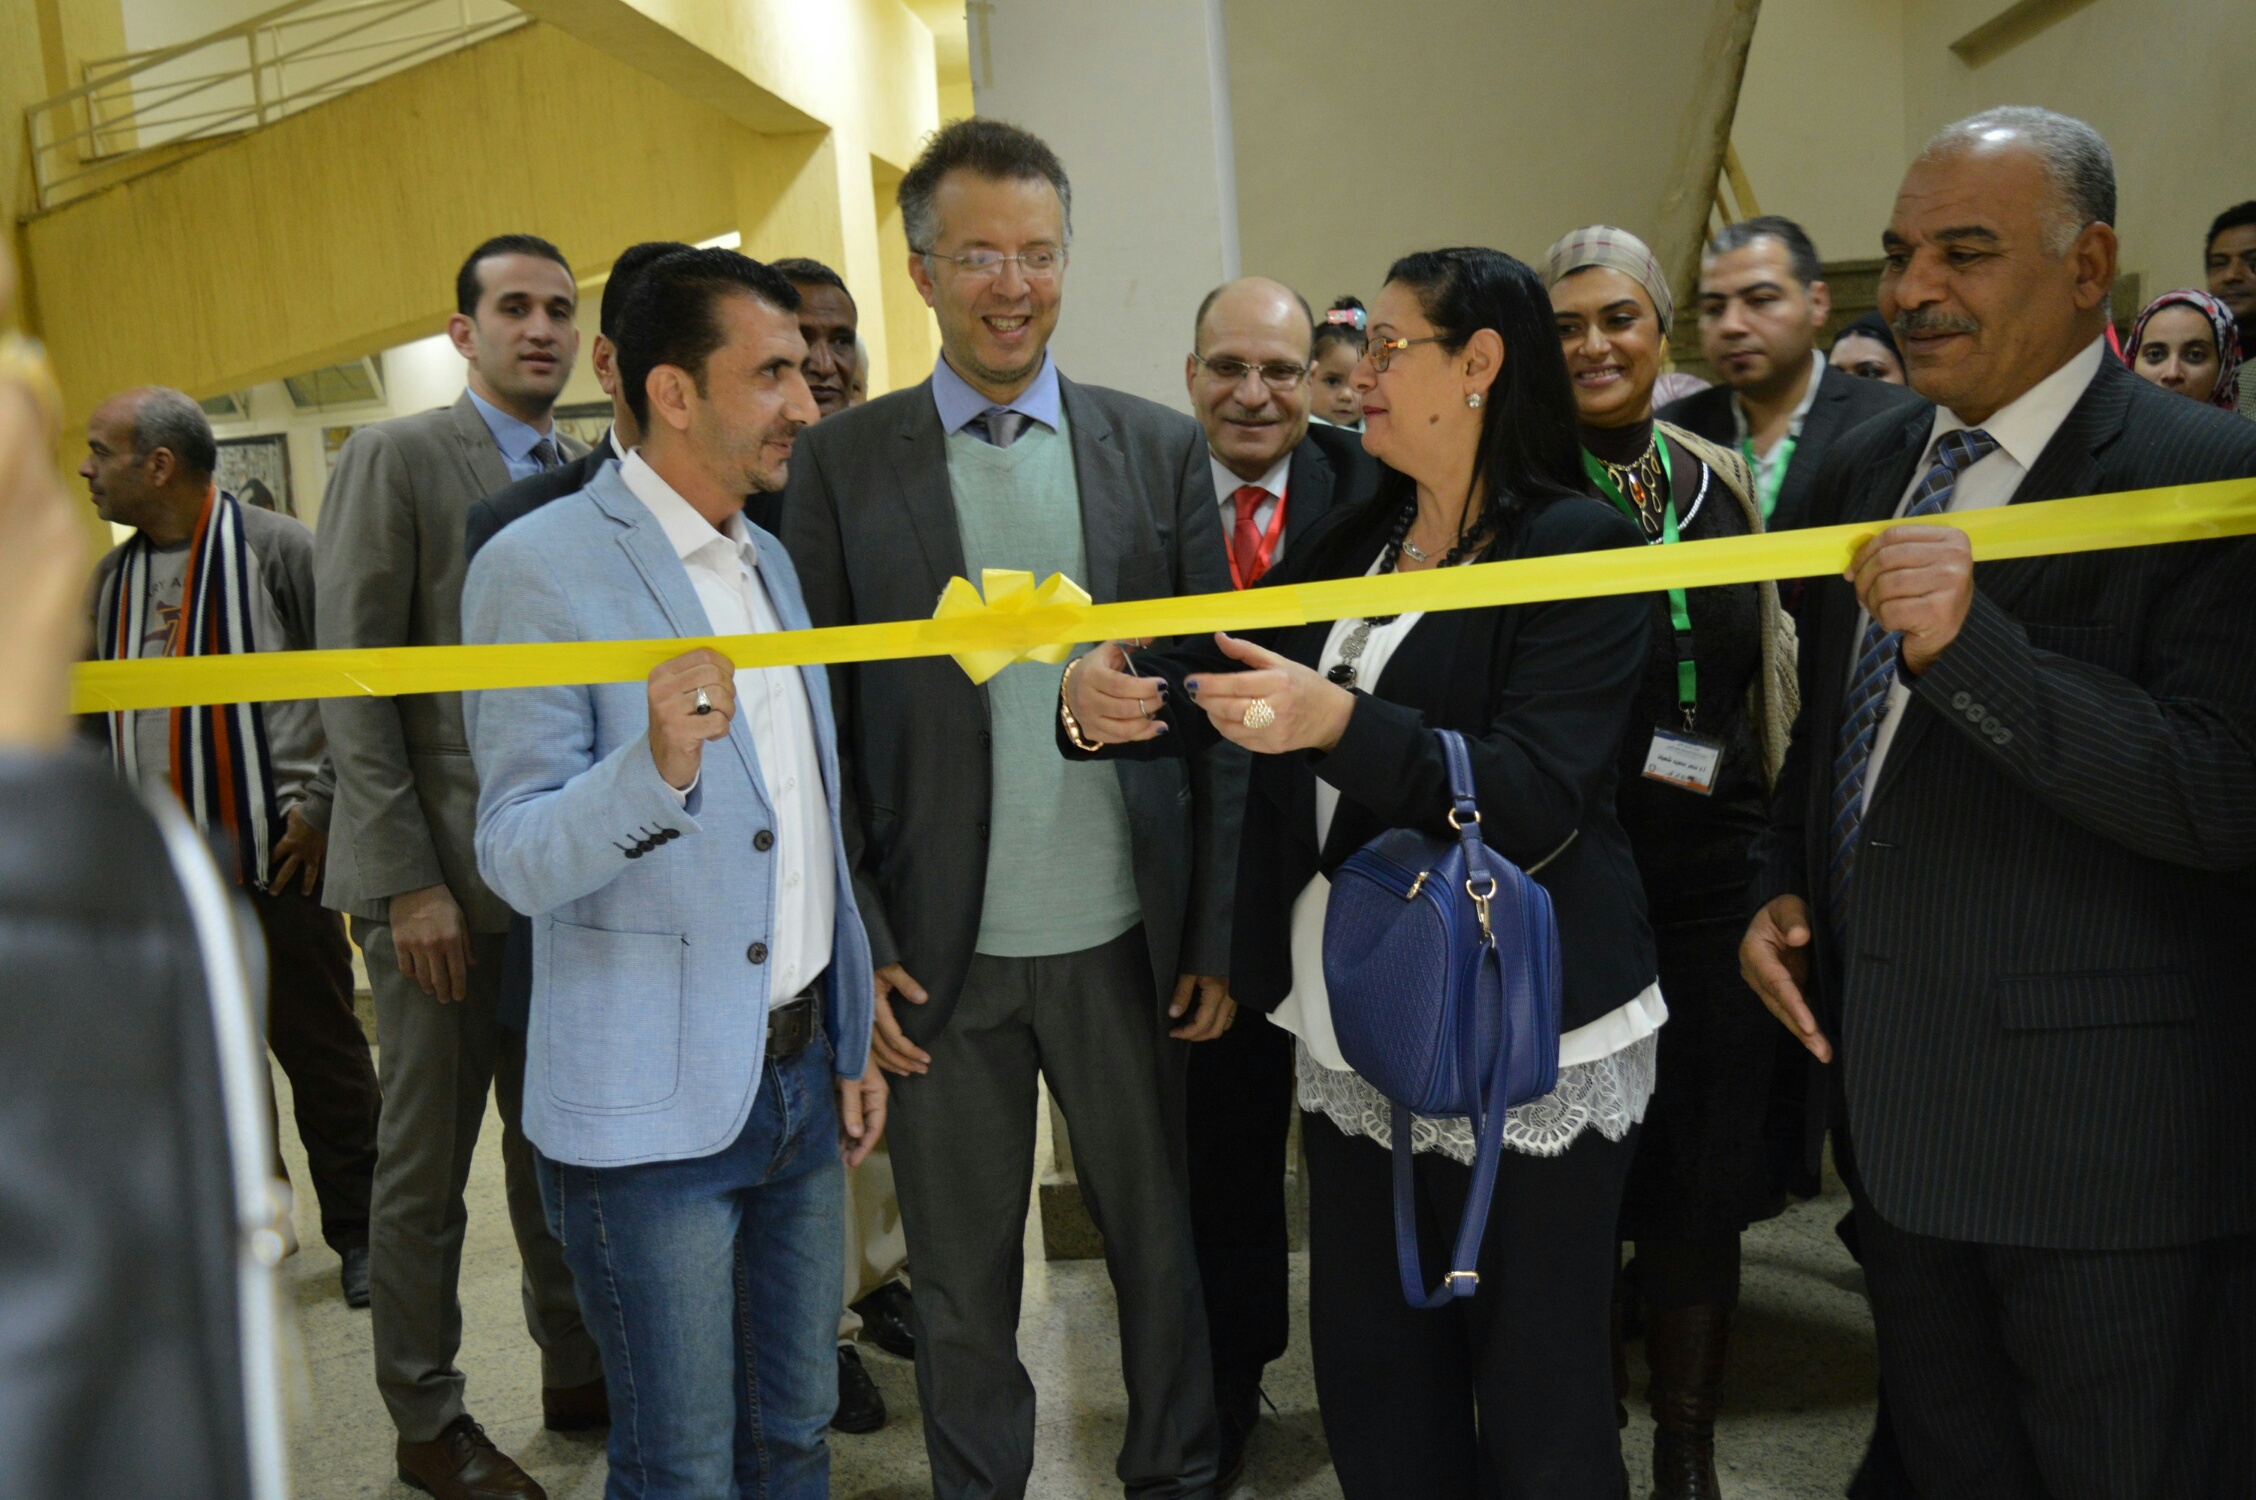       الأقصر تشهد إفتتاح مؤتمر التنمية المستدامة للمجتمعات بالوطن العربى